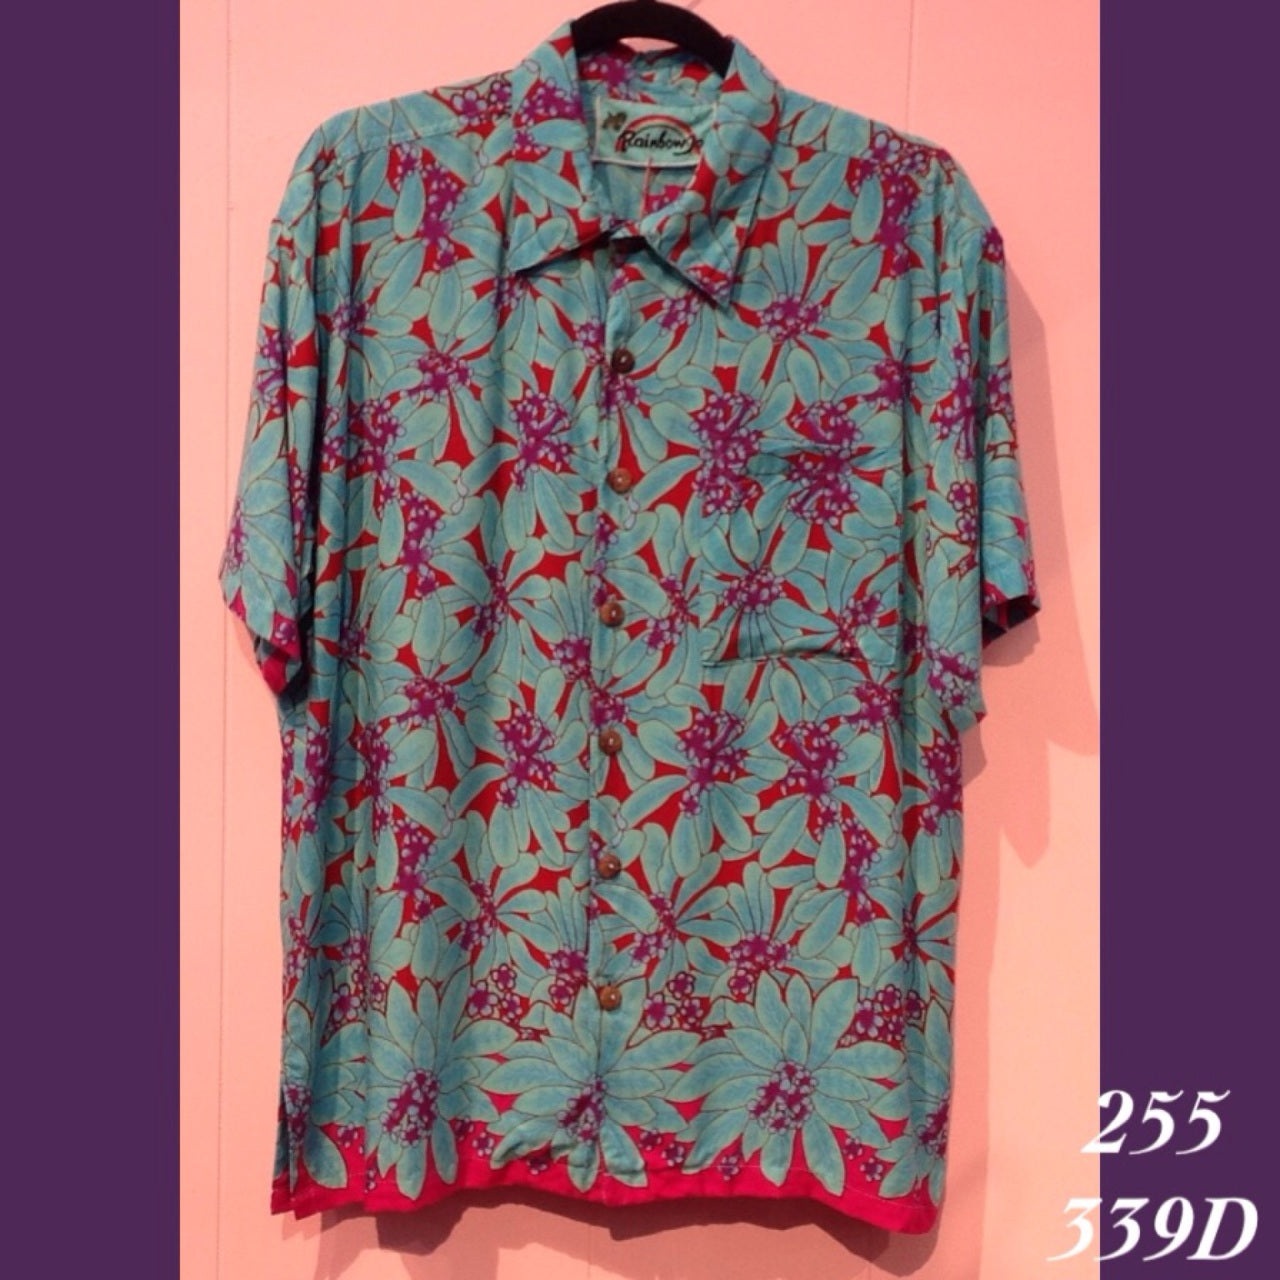 255 - 339D , Men's Aloha Shirt